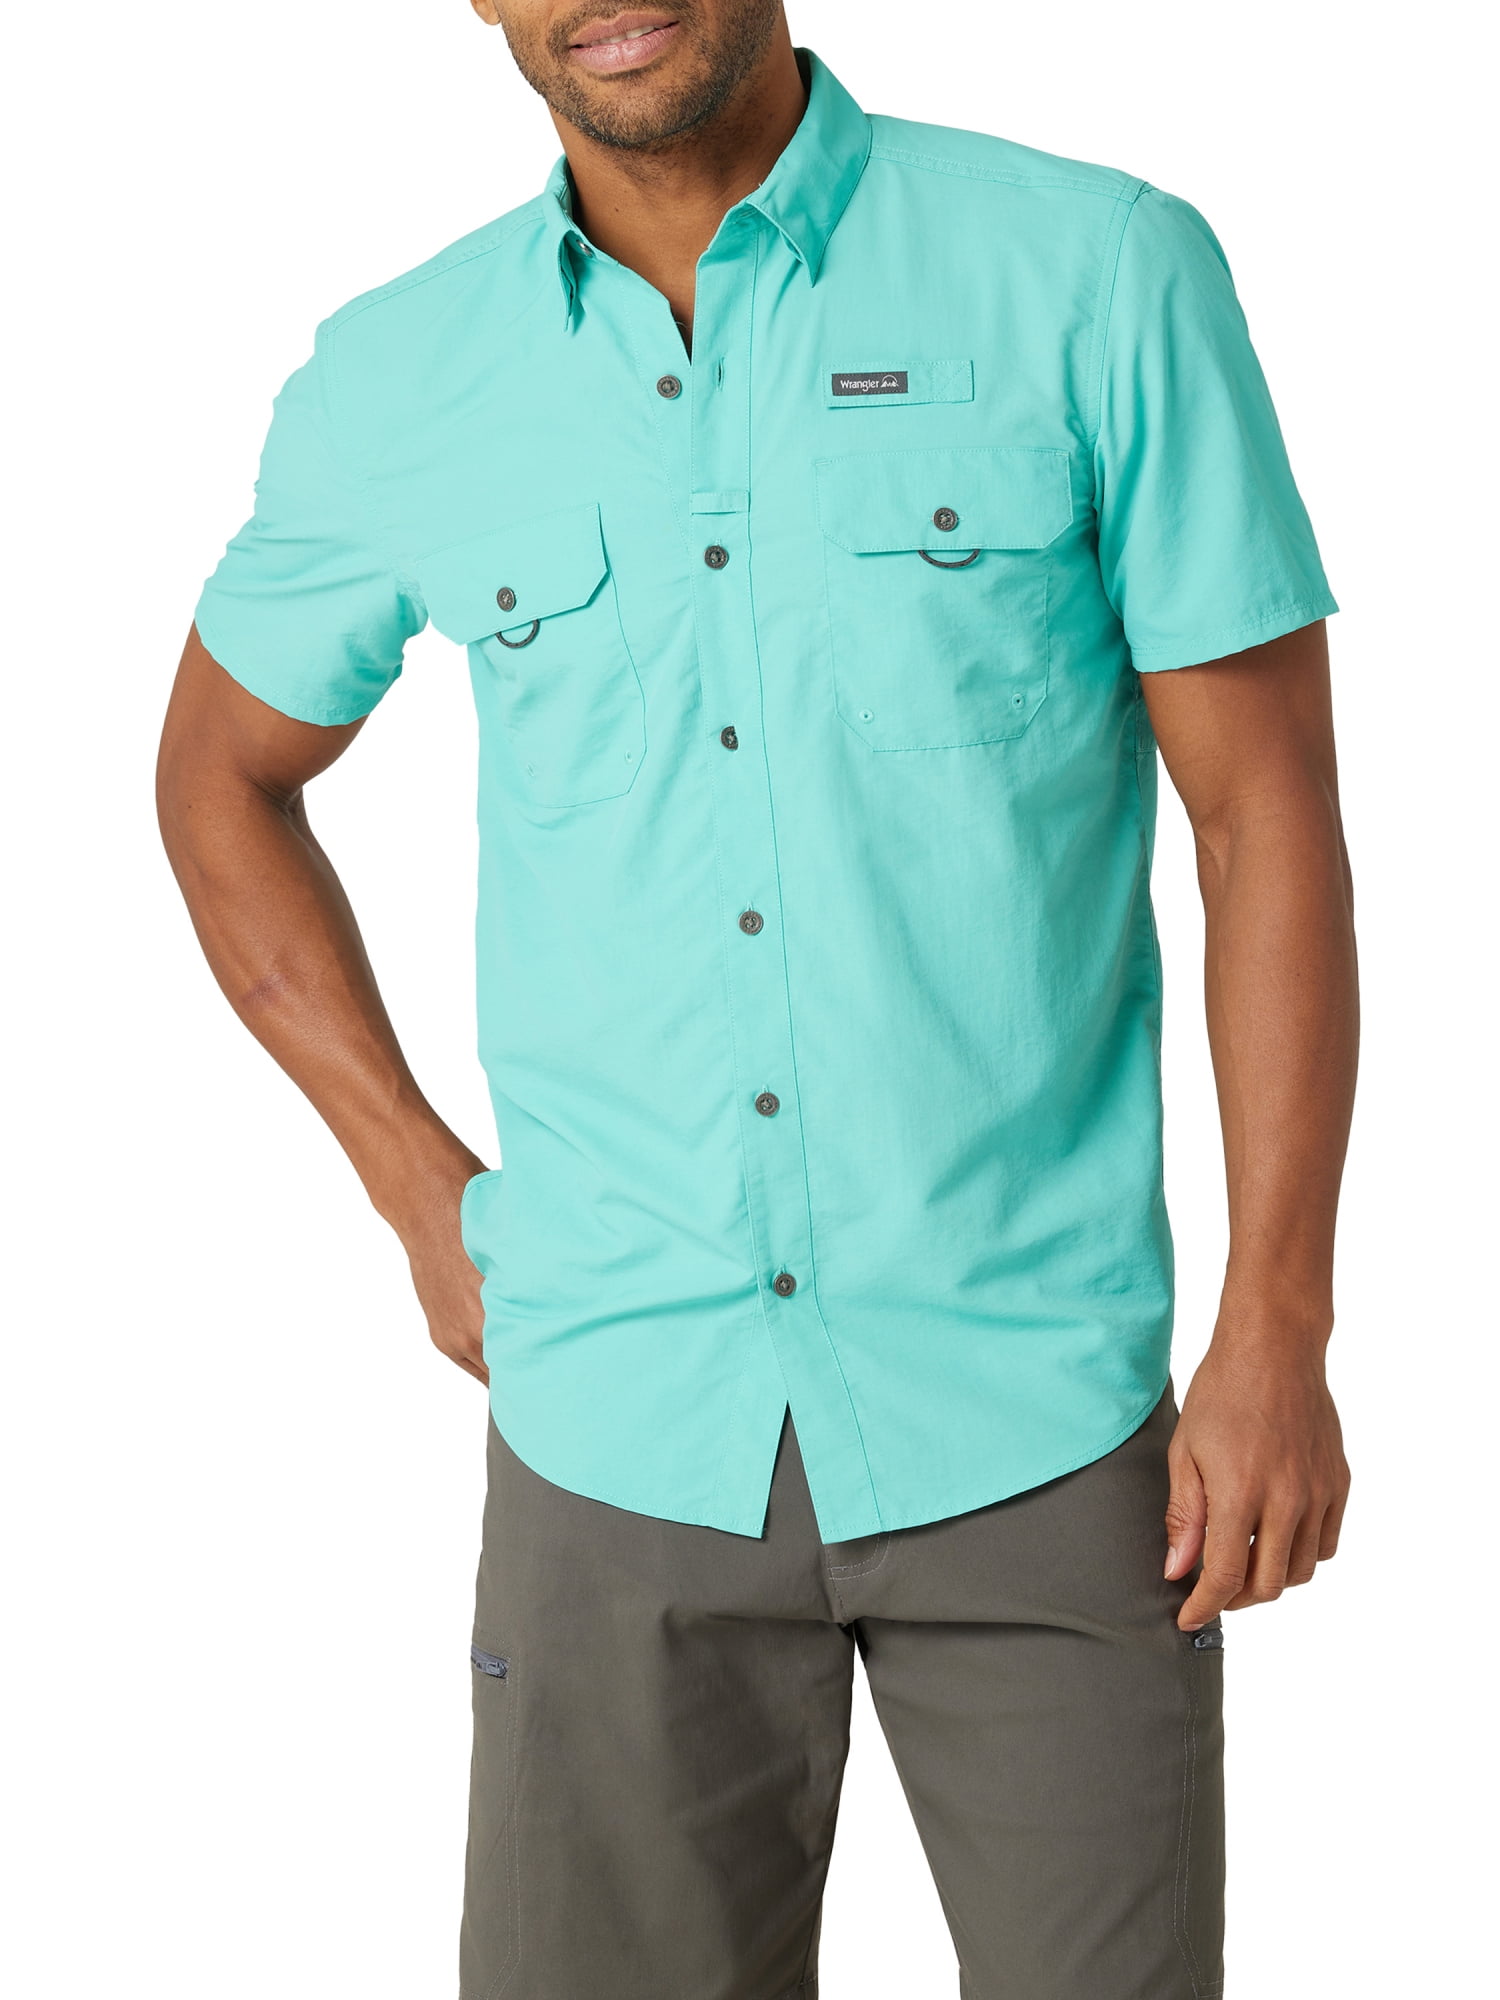 Wrangler Men's Short Sleeve Fishing Shirt, Sizes S-5XL